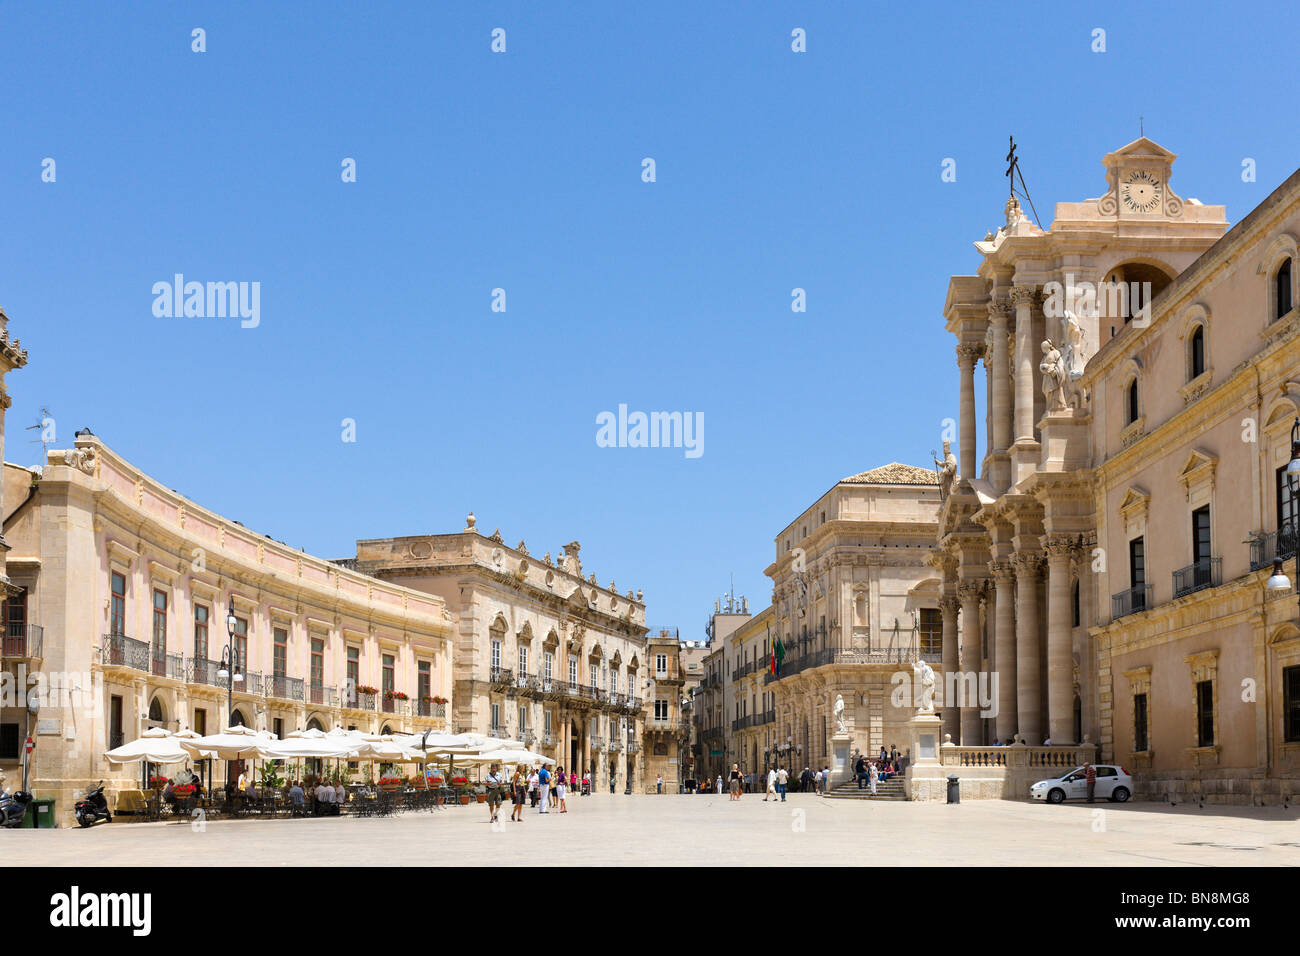 Piazza del Duomo mit dem Dom auf der rechten Seite des Schusses, Ortigia, Syrakus (Siracusa), Sizilien, Italien Stockfoto